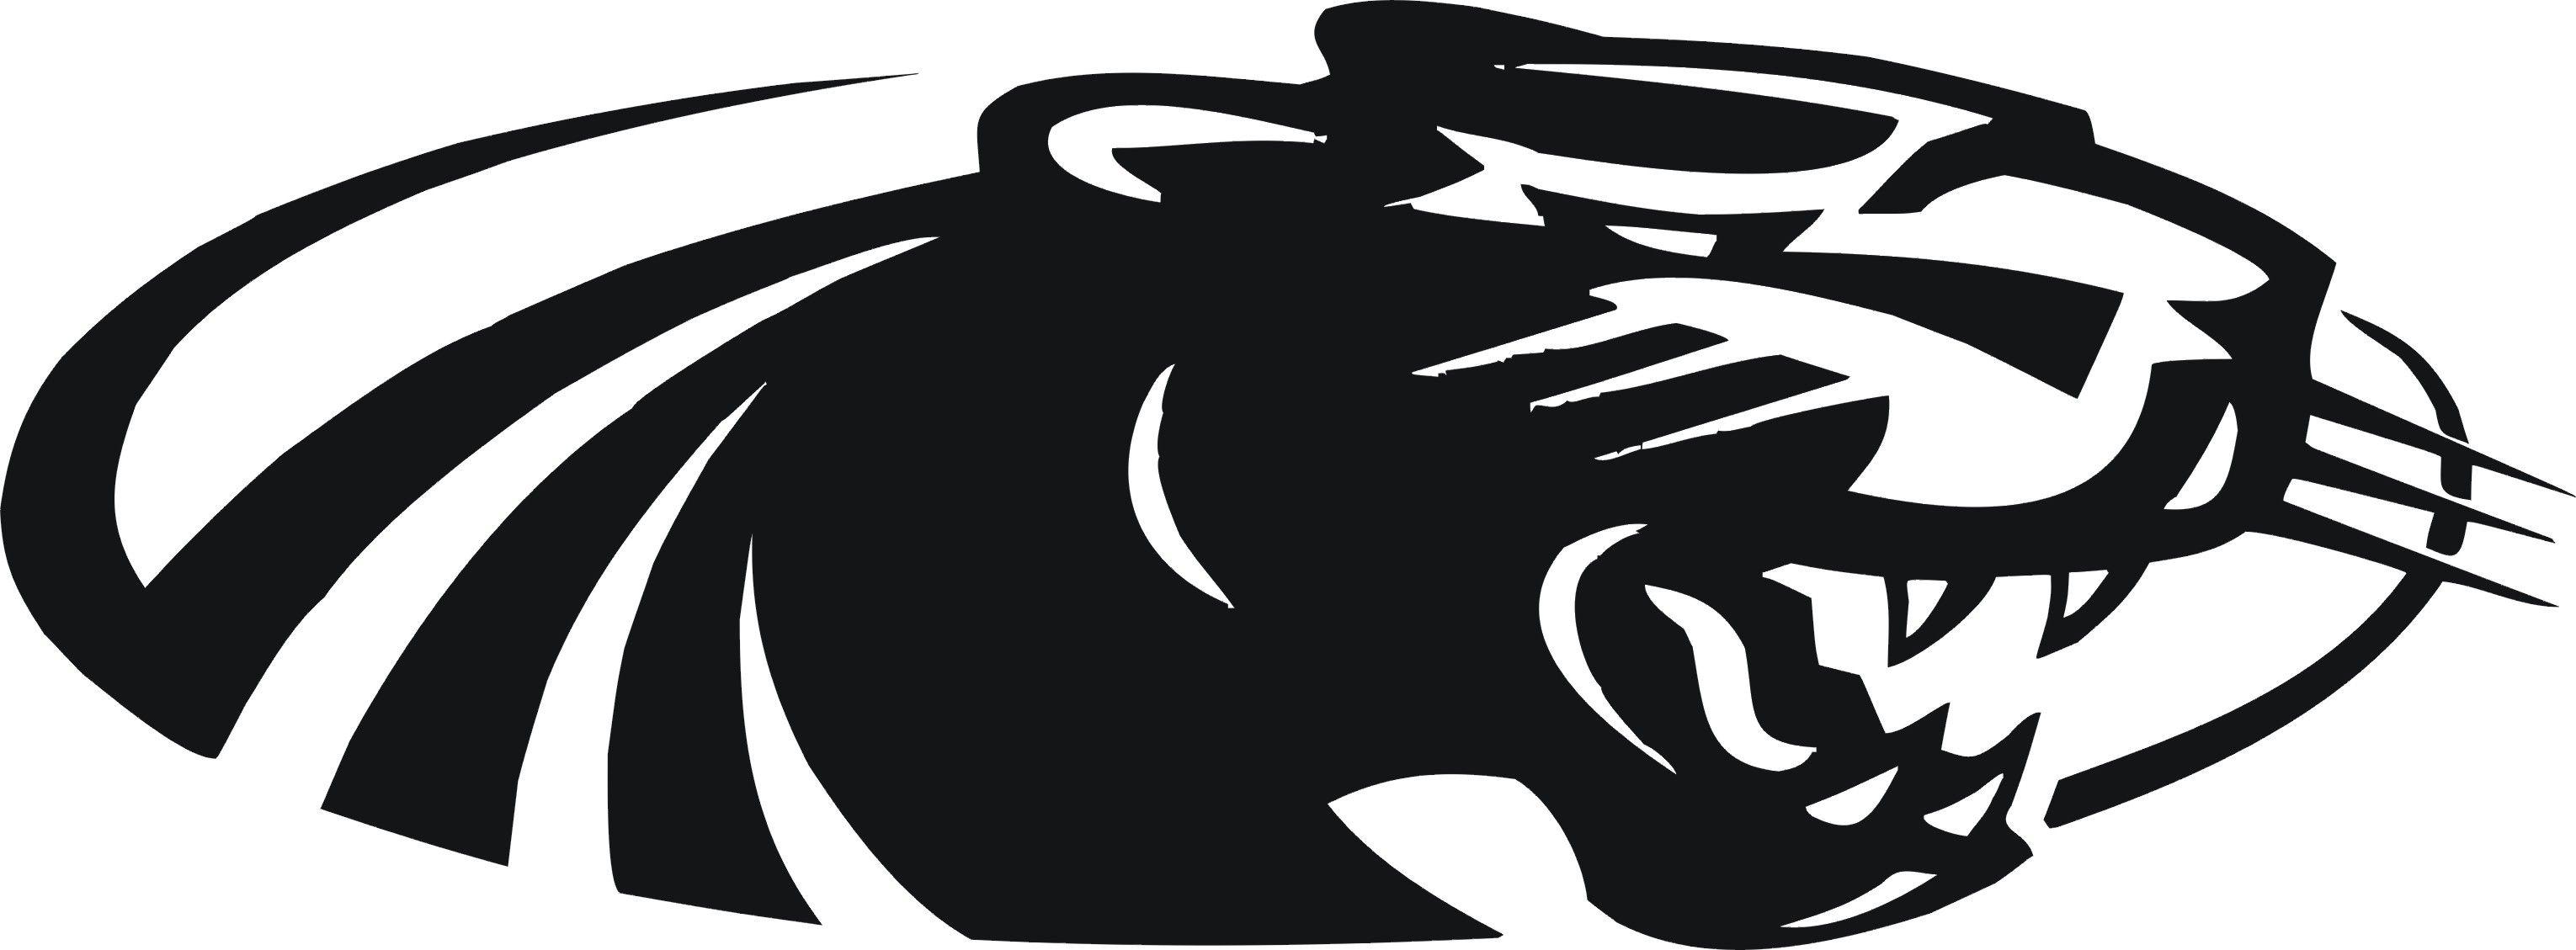 Gold Panther Logo - Black panther Logos